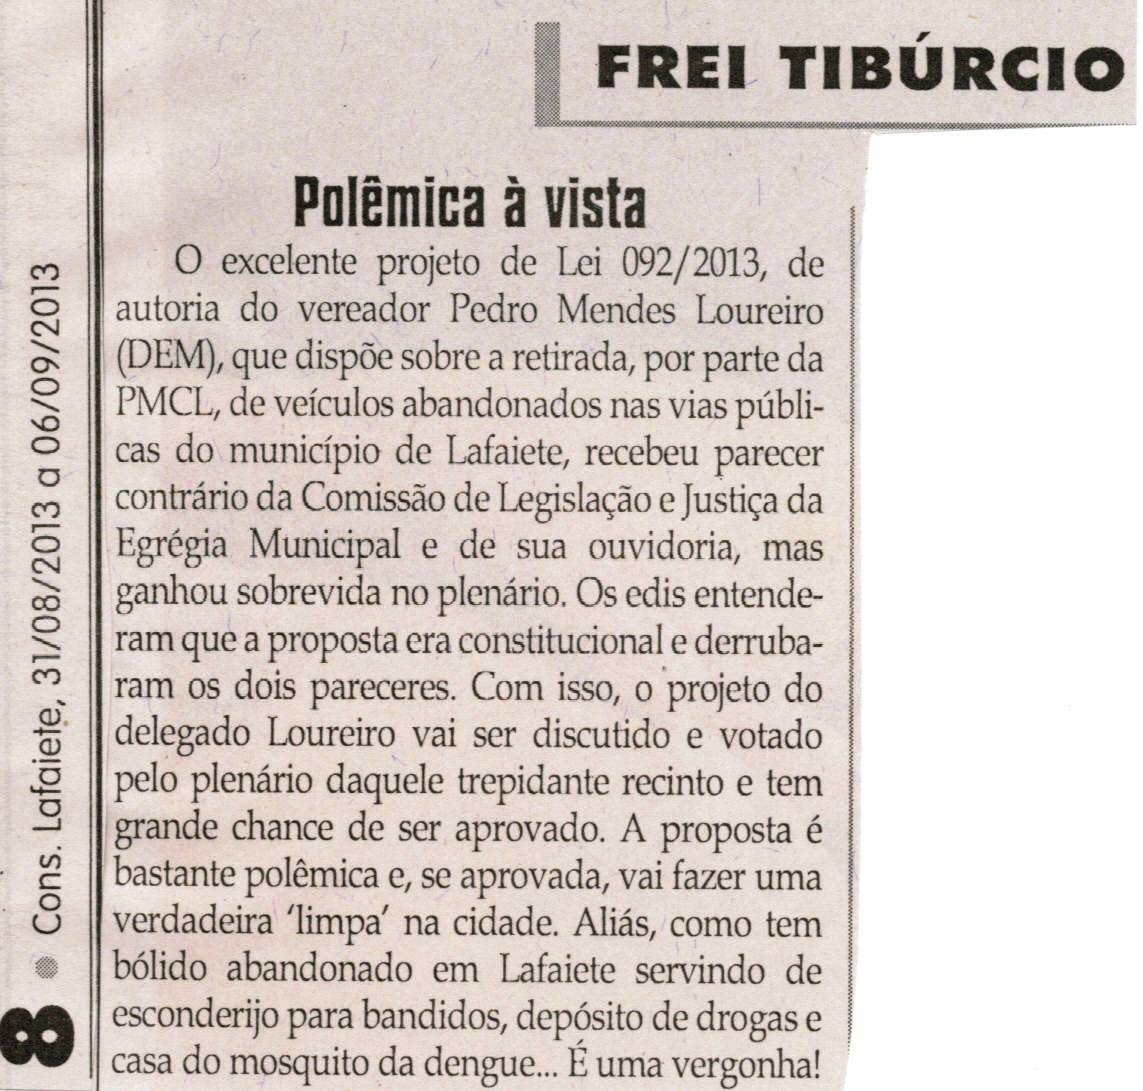 Polêmica à vista. Jornal Correio da Cidade, Conselheiro Lafaiete, 31 ago. 2013, Opinião, Frei Tibúrcio, p. 08